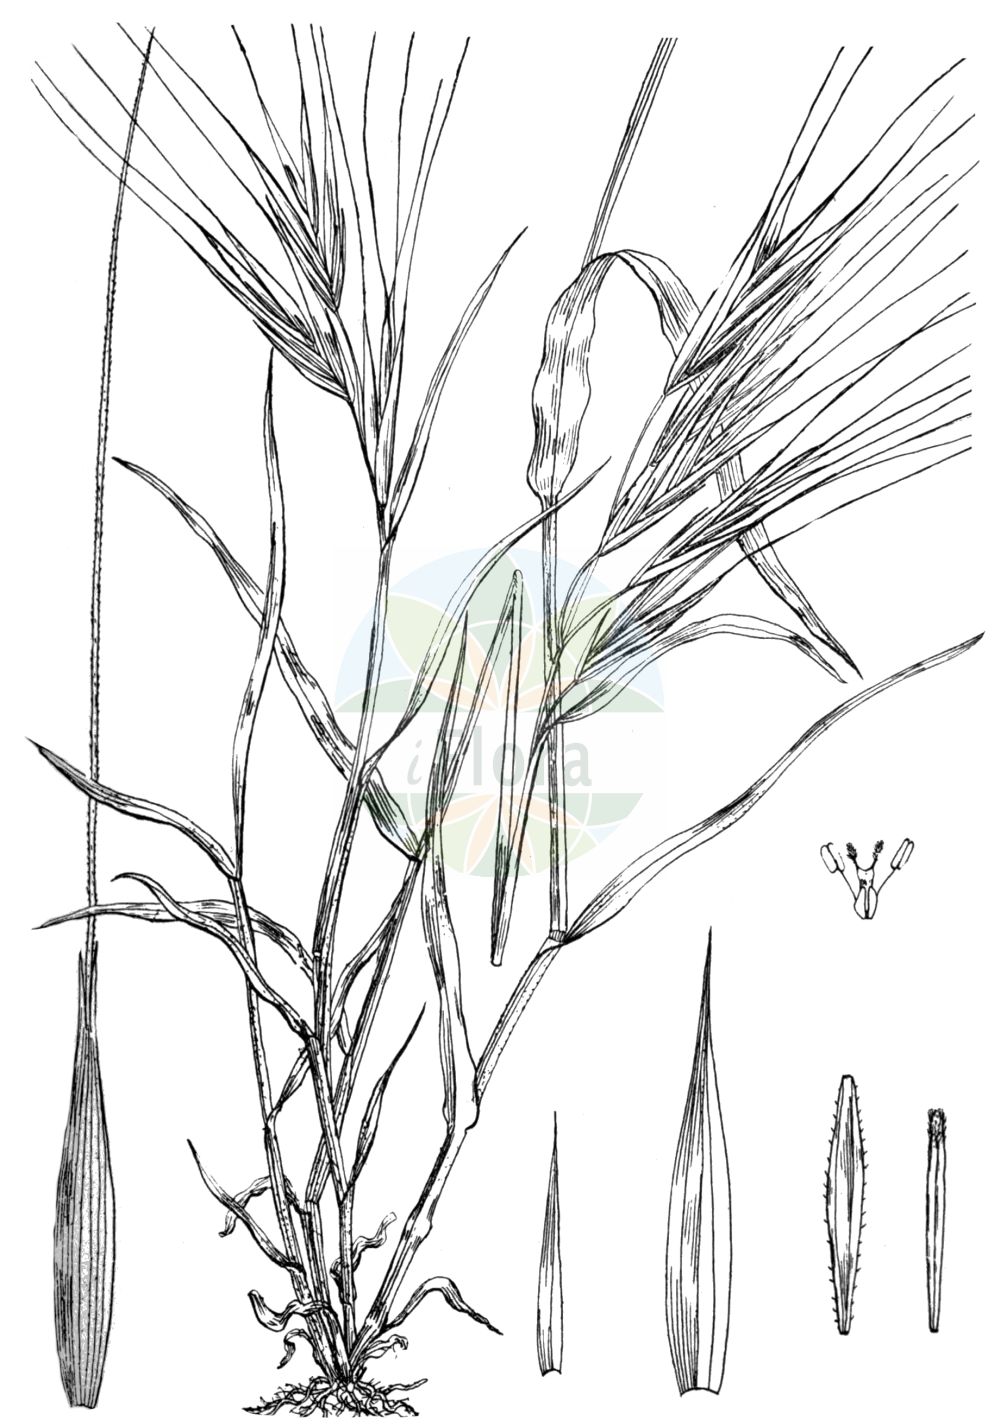 Historische Abbildung von Anisantha rigida (Ripgut Brome). Das Bild zeigt Blatt, Bluete, Frucht und Same. ---- Historical Drawing of Anisantha rigida (Ripgut Brome). The image is showing leaf, flower, fruit and seed.(Anisantha rigida,Ripgut Brome,Anisantha rigida,Bromus maximus,Bromus rigidus,Bromus villosus subsp. rigidus,Anisantha,Poaceae,Süßgräser,Grass family,Blatt,Bluete,Frucht,Same,leaf,flower,fruit,seed,Wood & Evans (1898-1912))